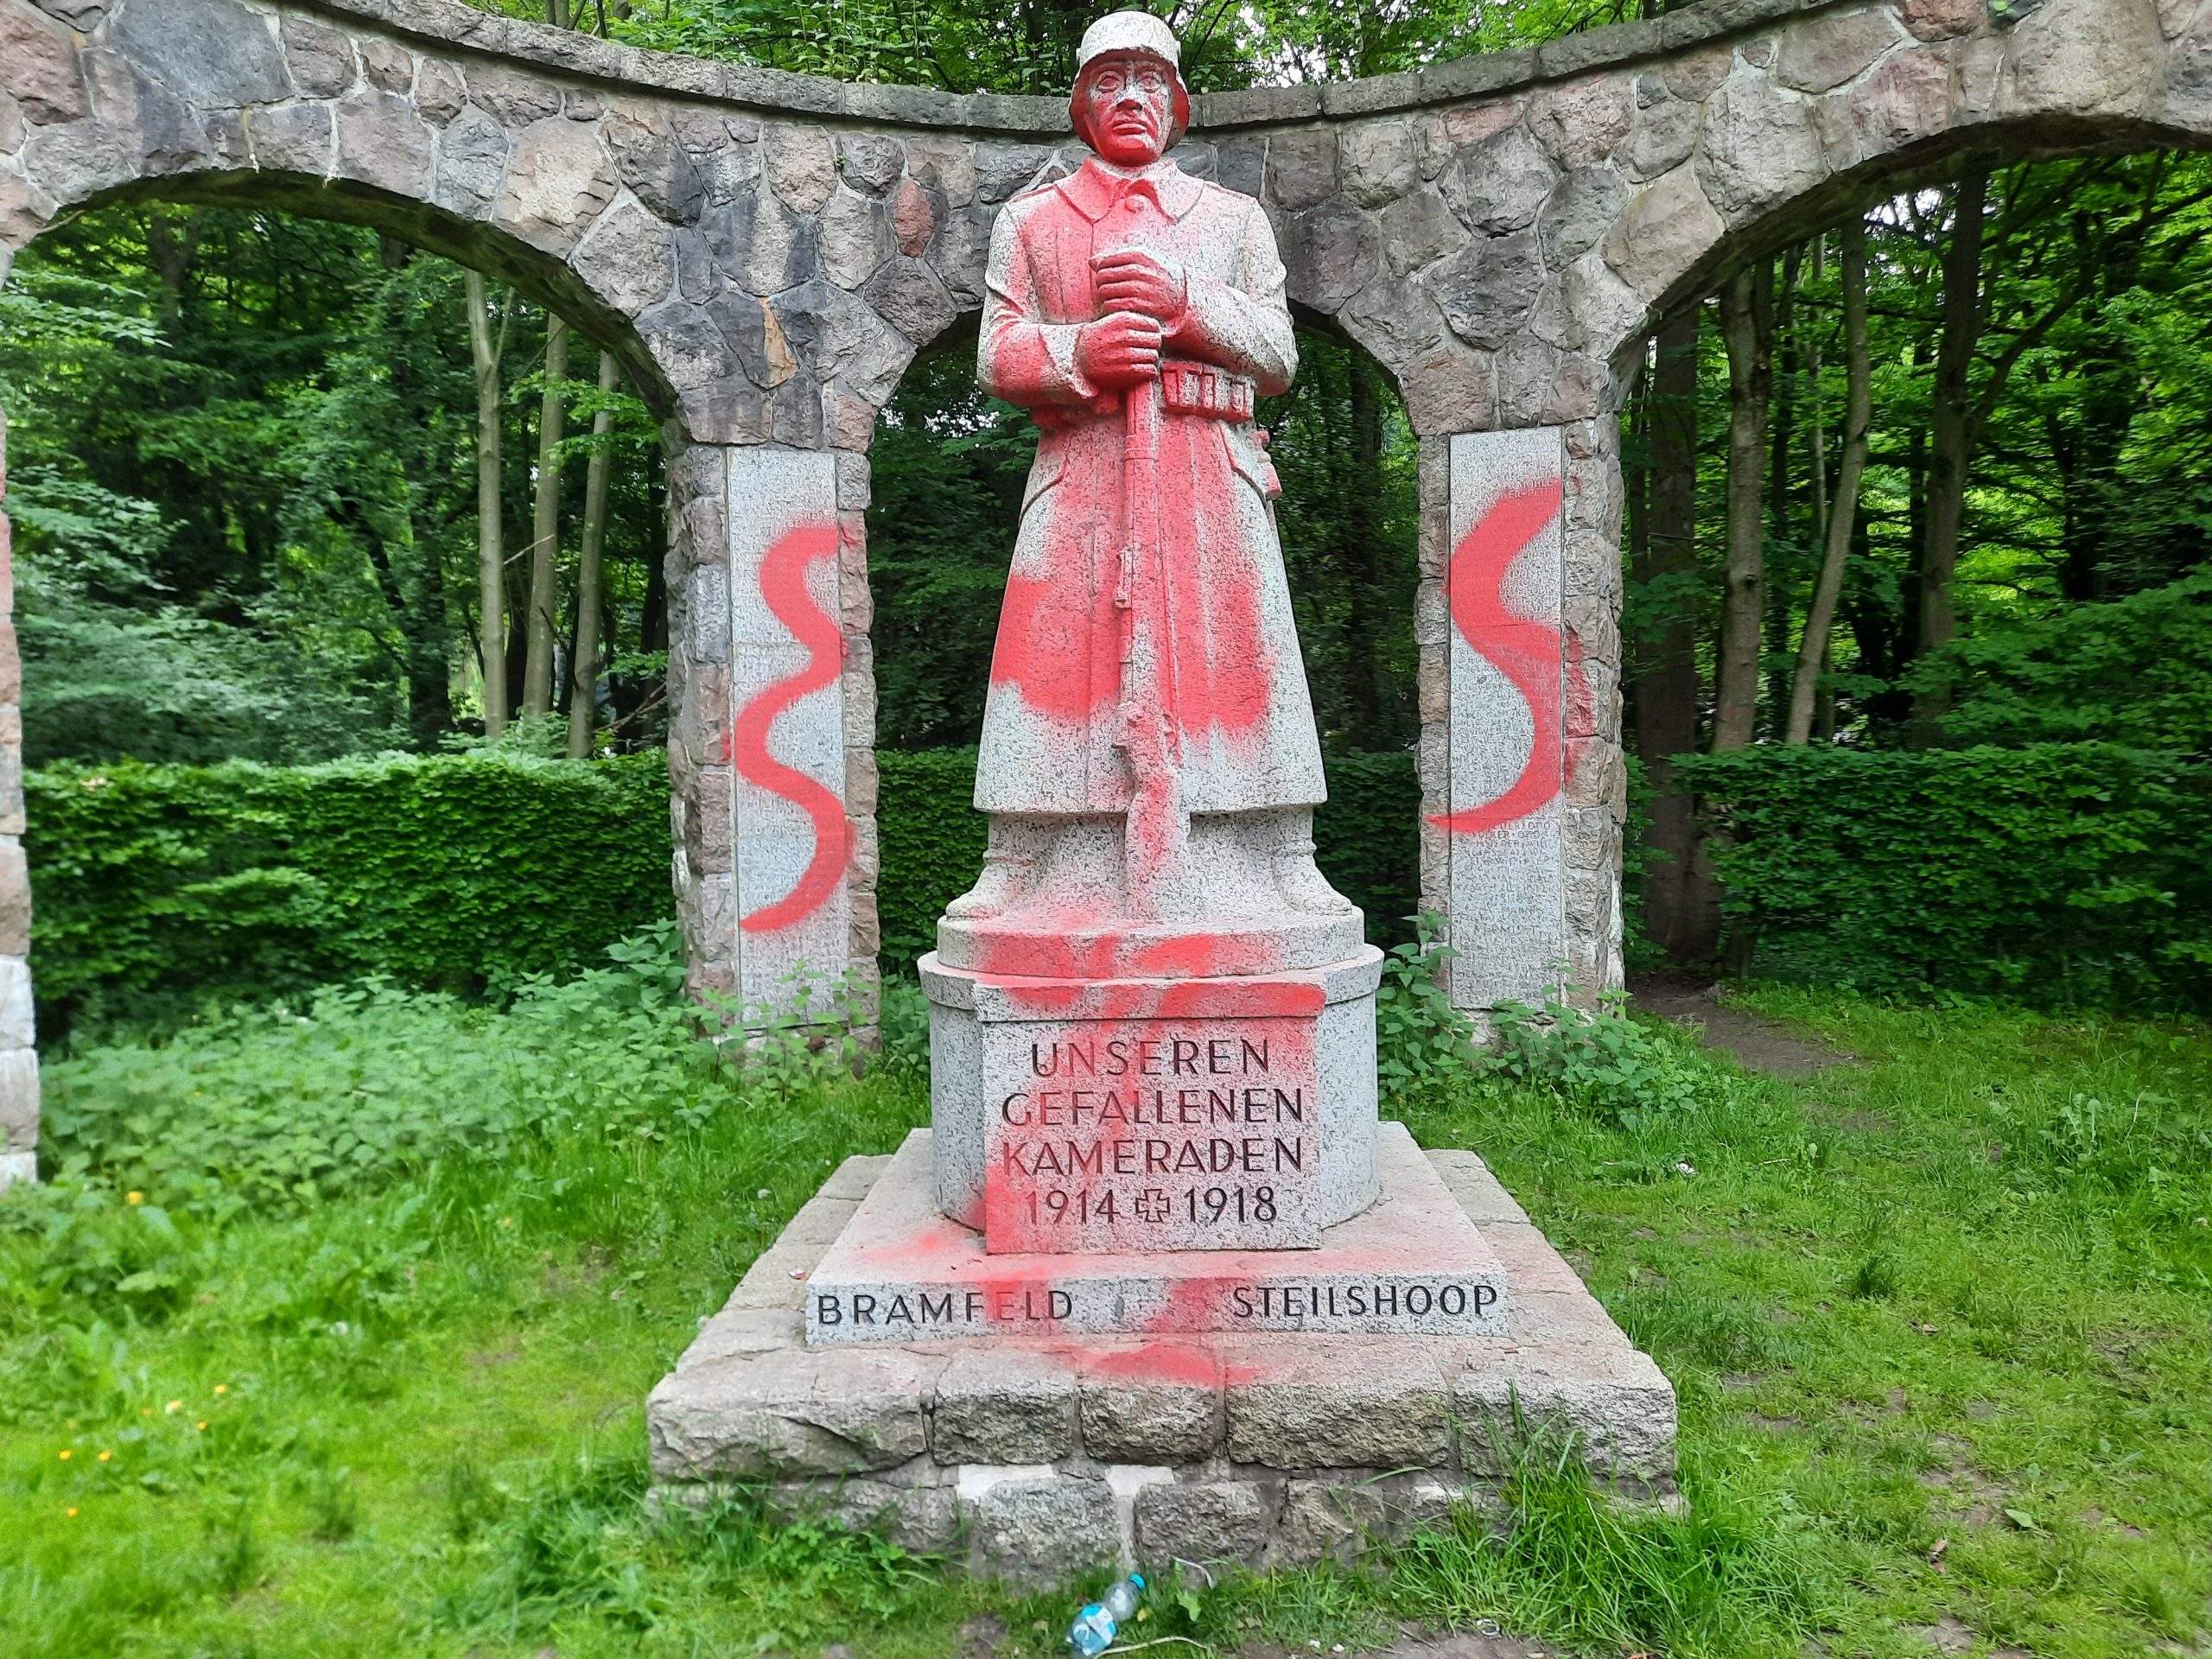 Das Kriegerdenkmal von Bramfeld wurde mit rotem Graffiti bemalt.